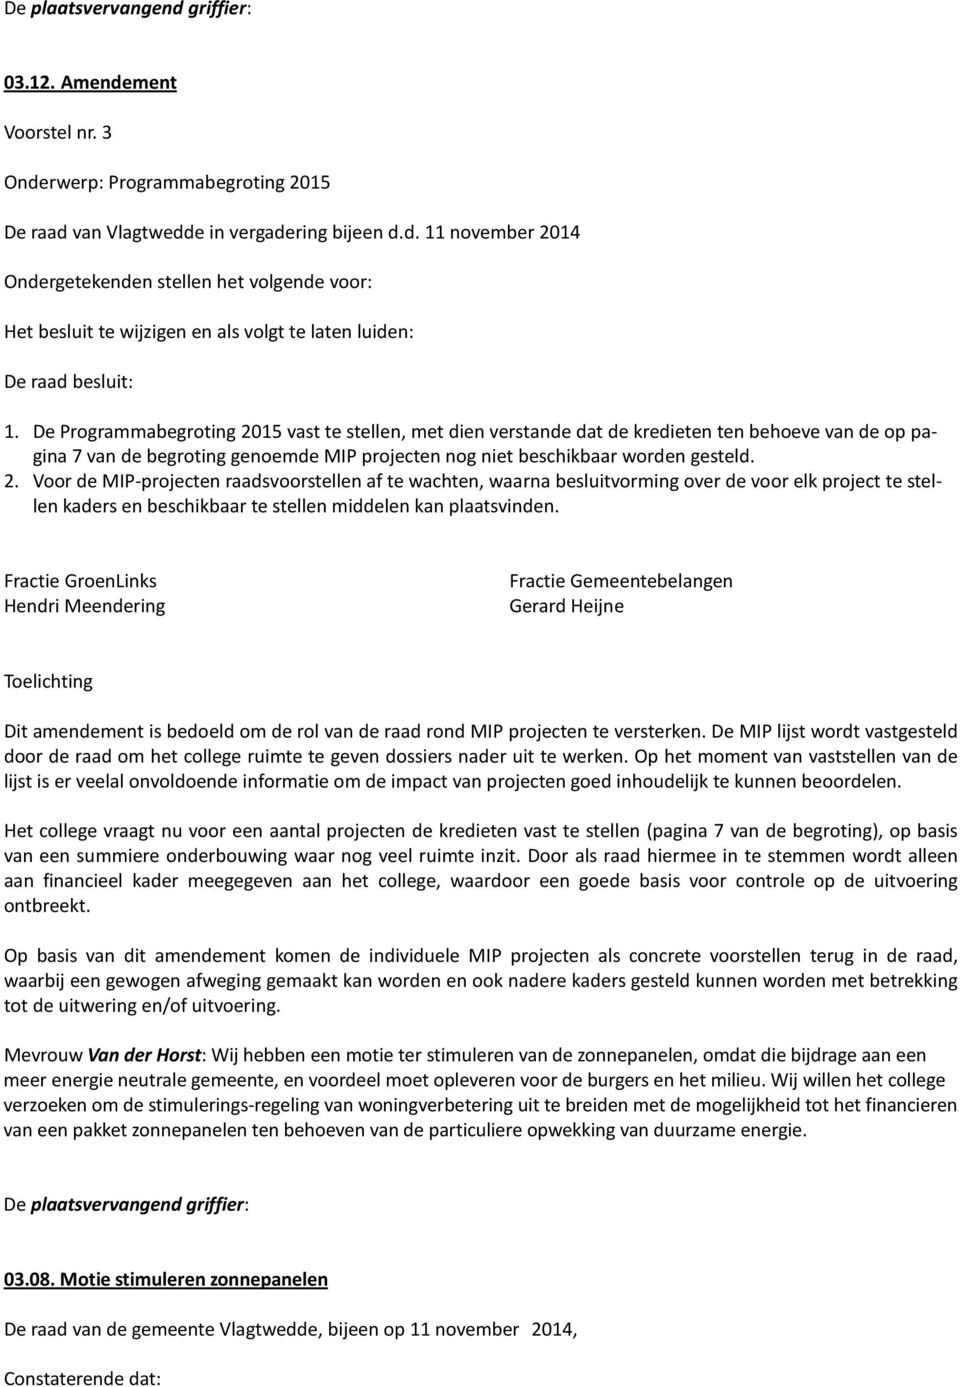 Fractie GroenLinks Hendri Meendering Fractie Gemeentebelangen Gerard Heijne Toelichting Dit amendement is bedoeld om de rol van de raad rond MIP projecten te versterken.